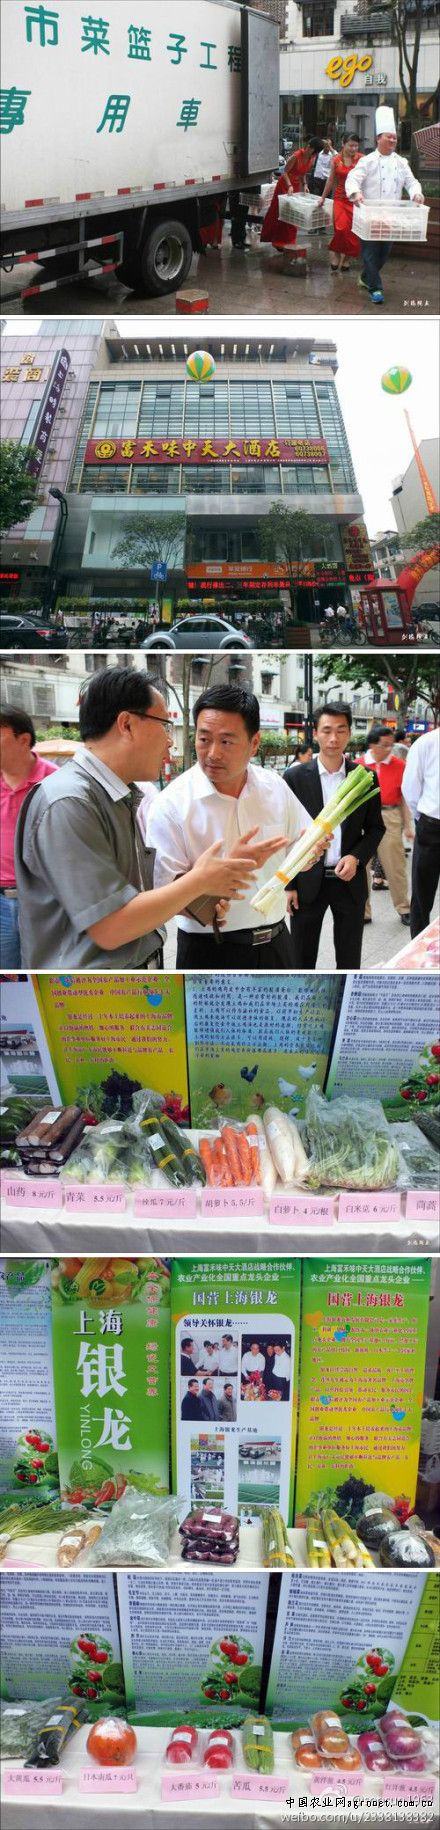 耐寒抗冻的阿波罗绿生菜首次“落户”北京